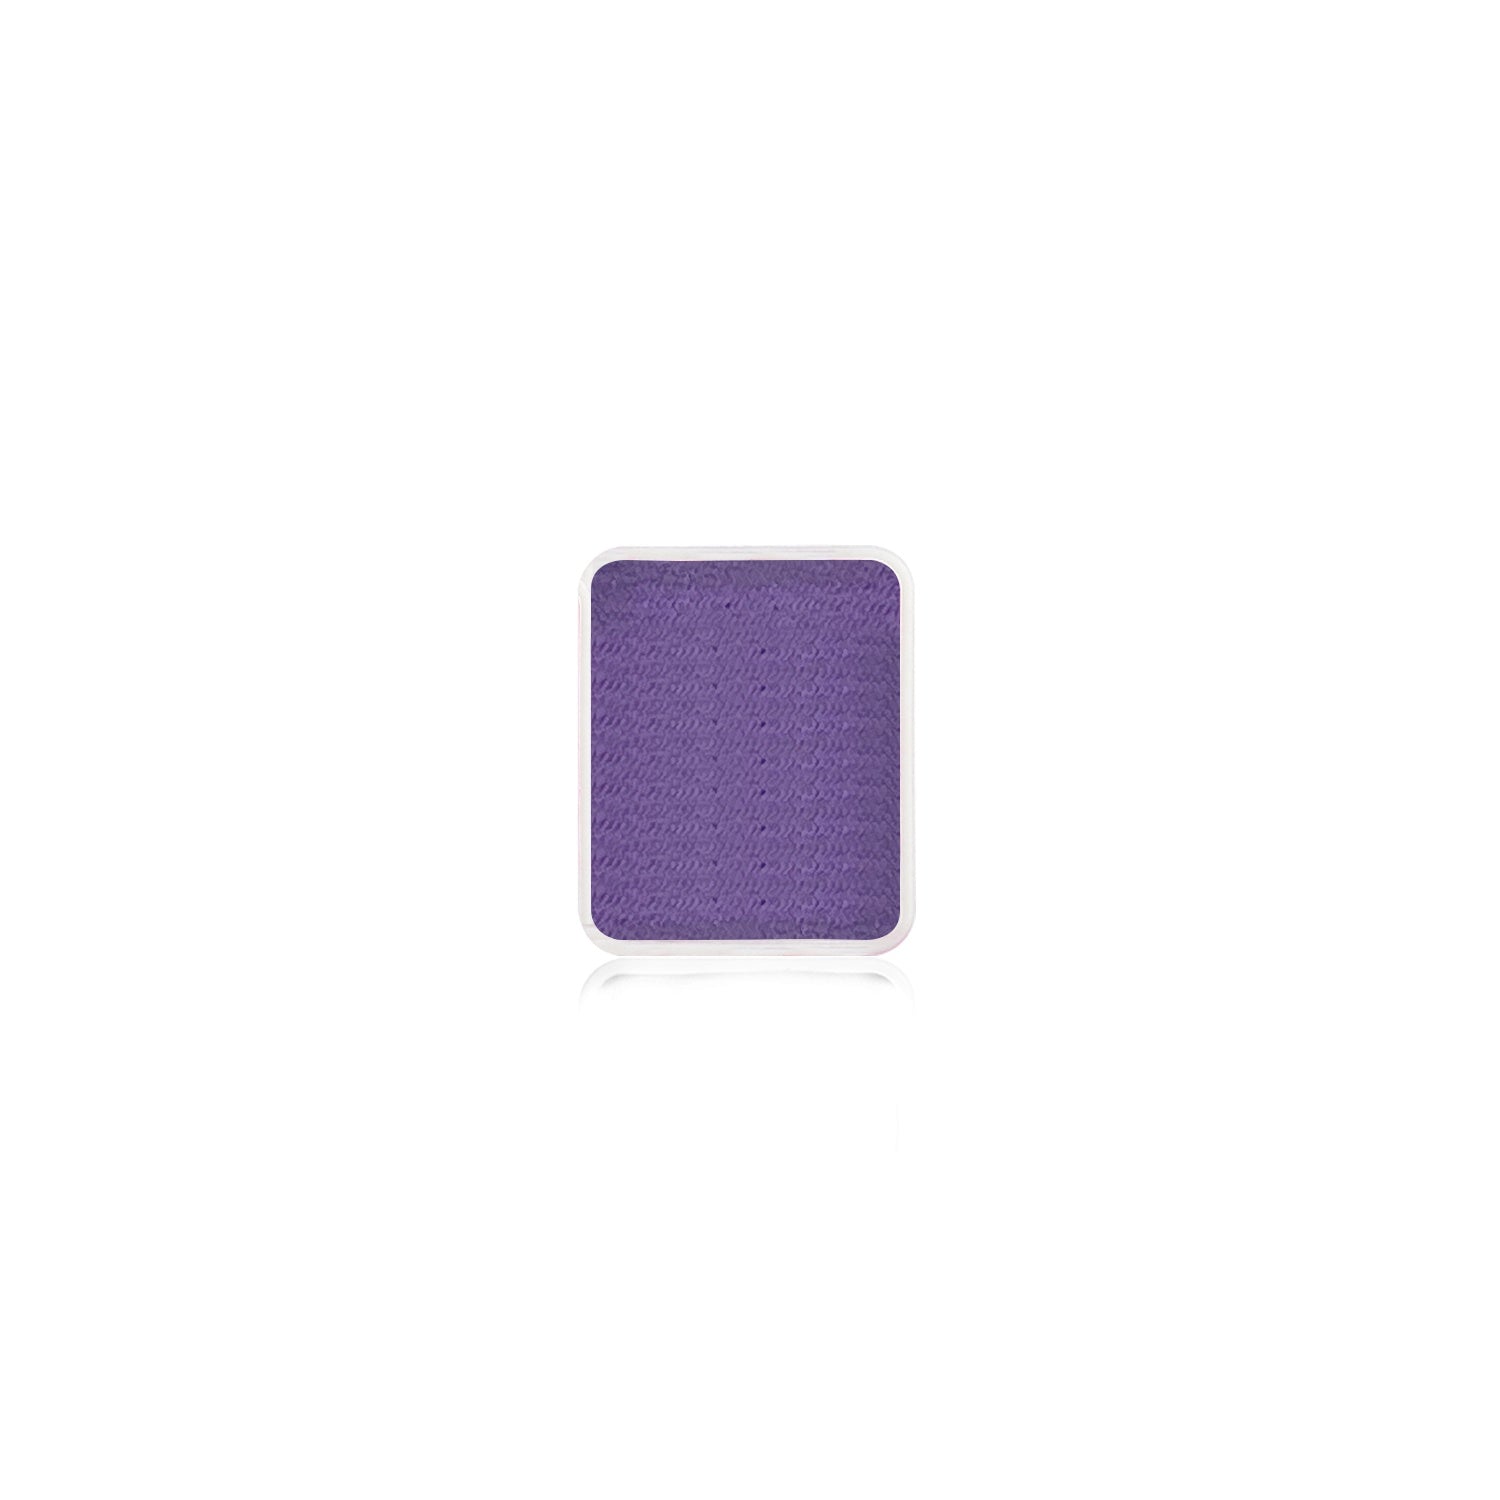 Kraze FX Face Paint Palette Refill - Violet (0.21 oz/6 gm)